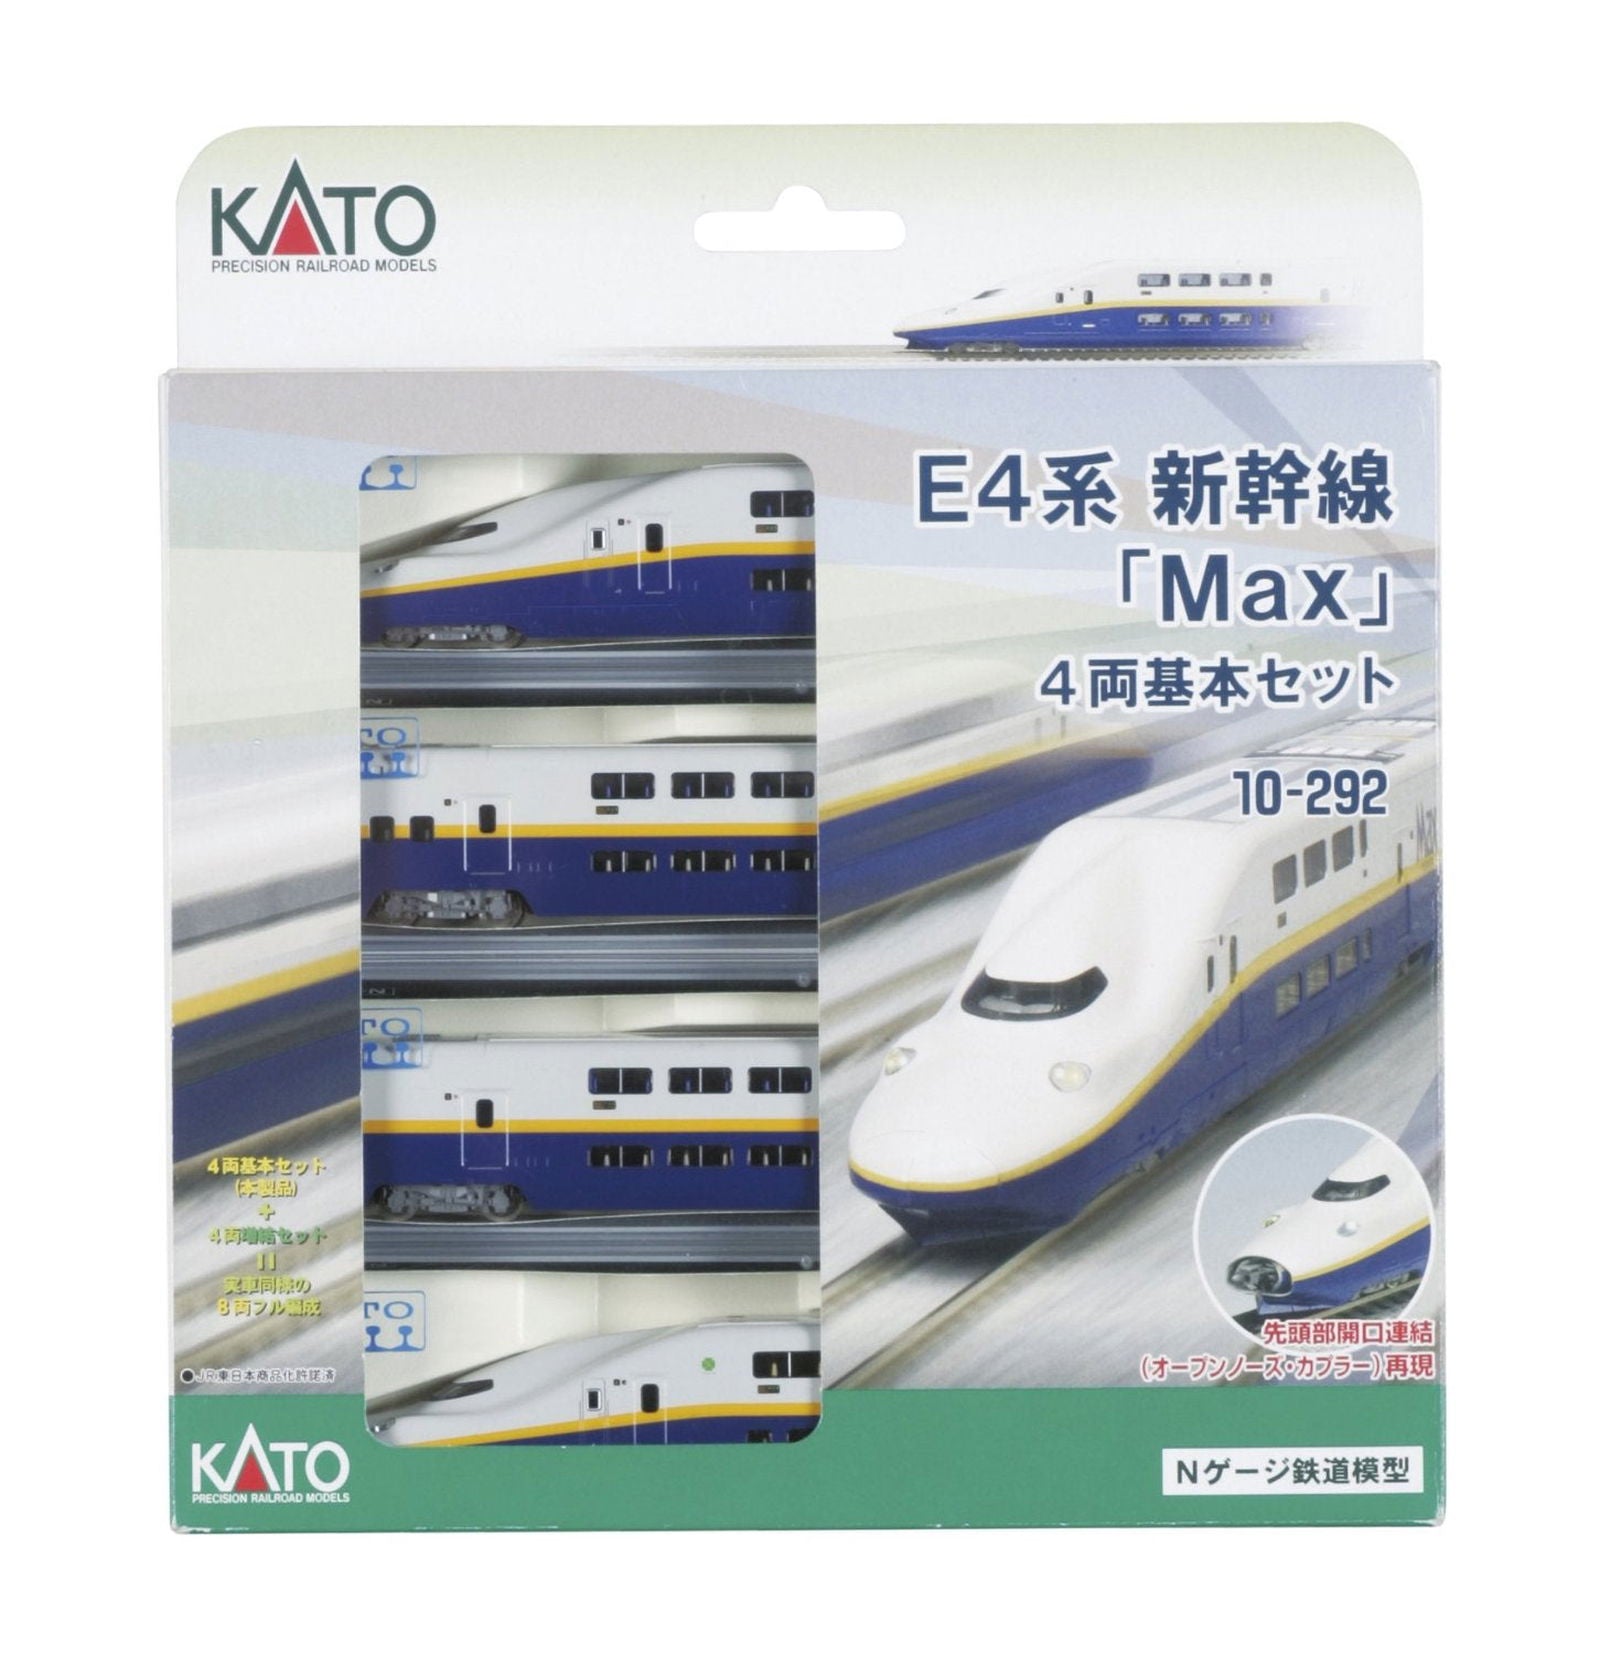 KATO 10-292 Series E4 Max Shinkansen 4 Car Set - BanzaiHobby